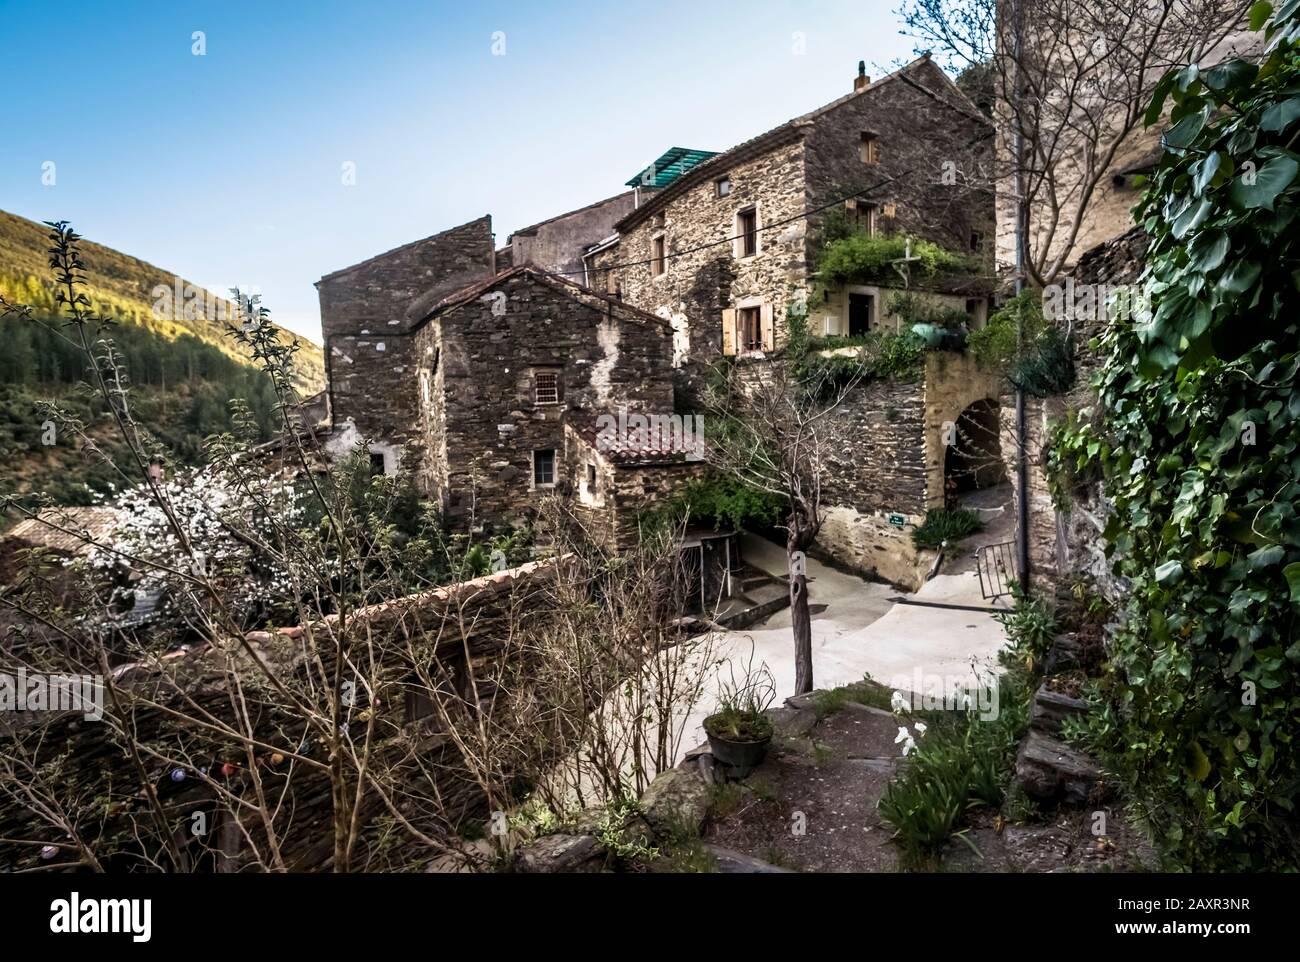 Dorf in der Nähe von Roquebrun. Der Weiler liegt direkt auf dem schwarzen Schiefer des Berges. Die Häuser bestehen aus demselben Material. Stockfoto